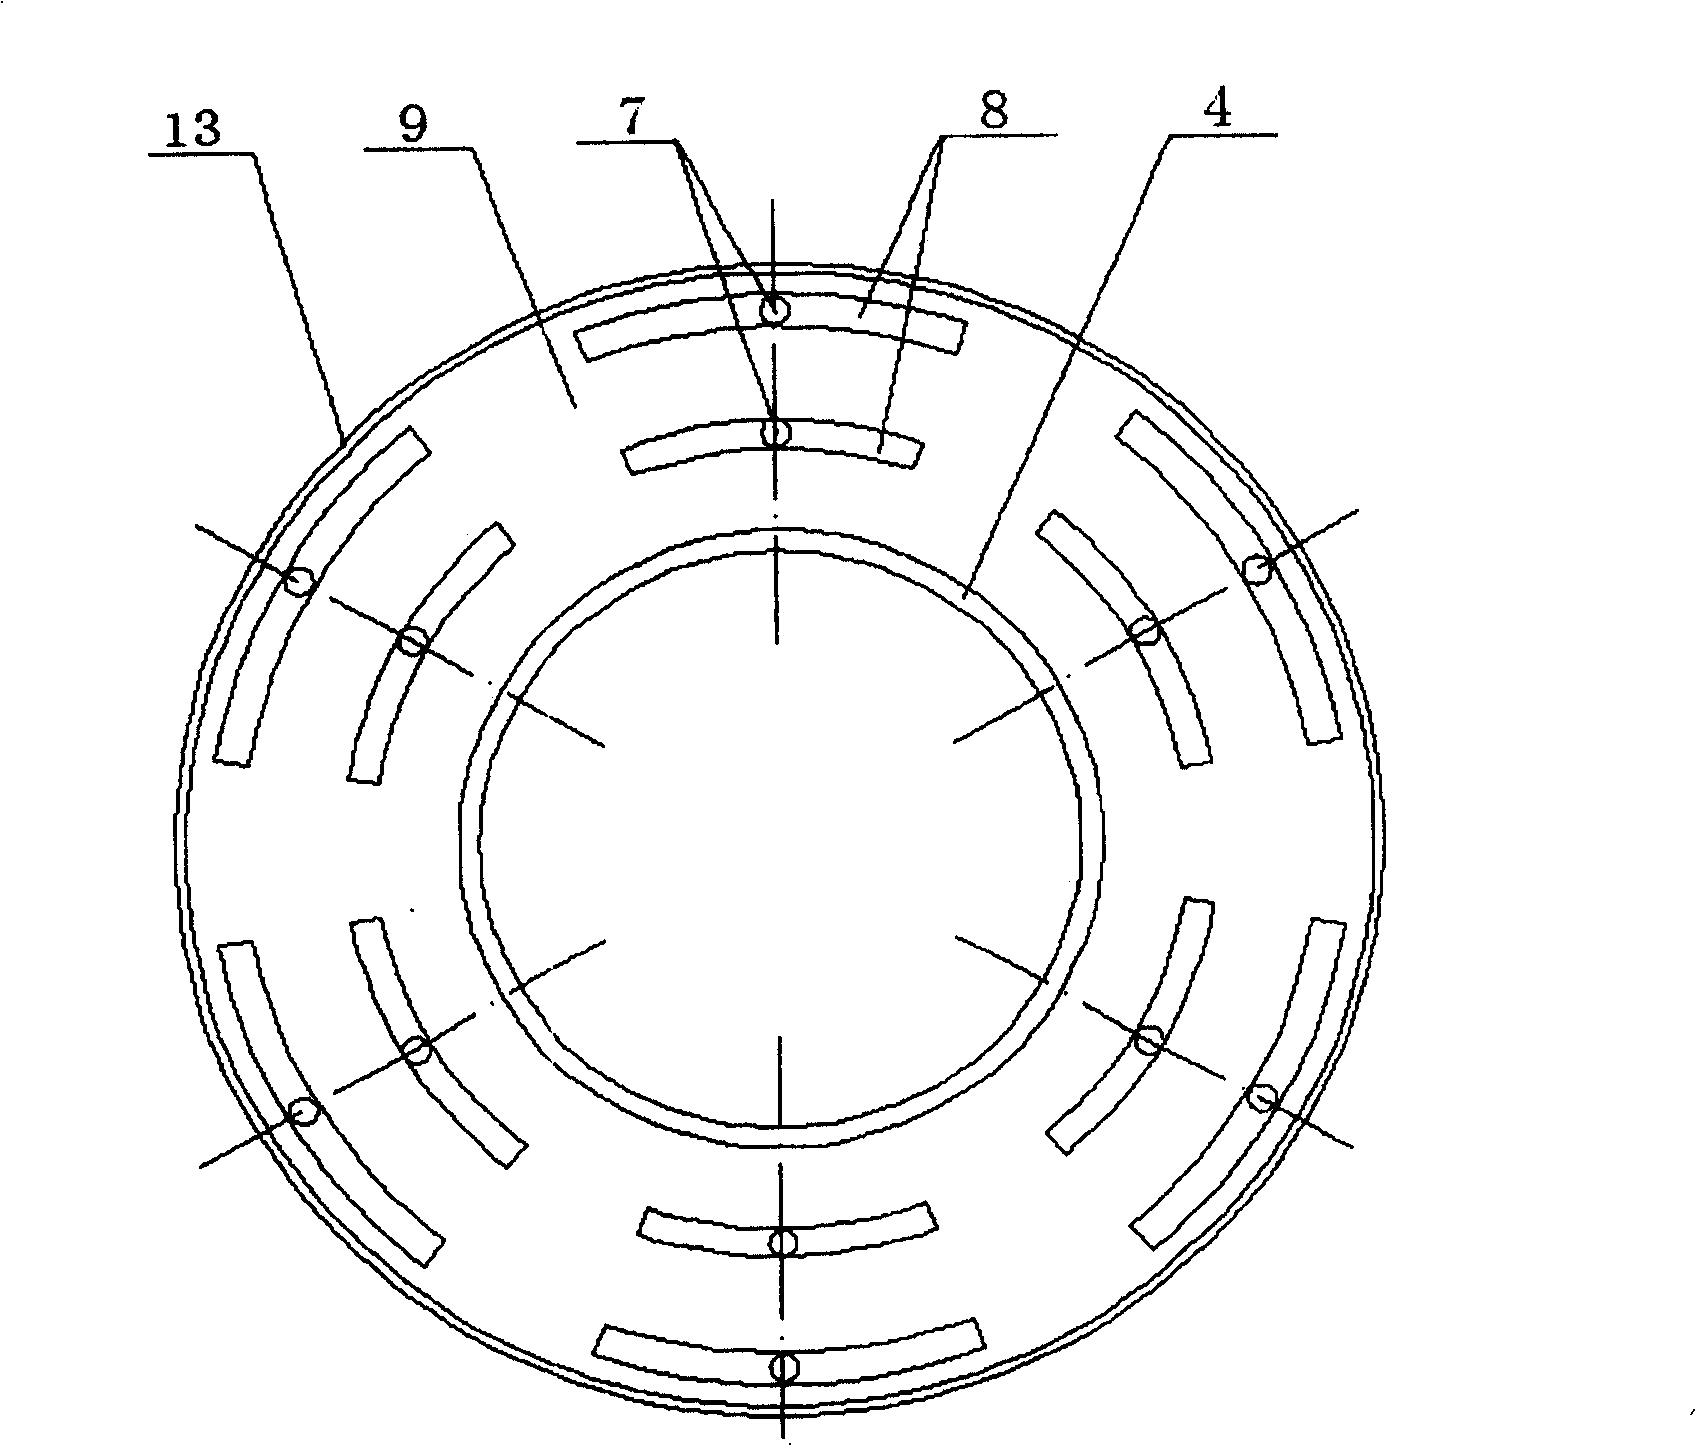 Controllable profile vaneless diffuser for centrifugal compressor